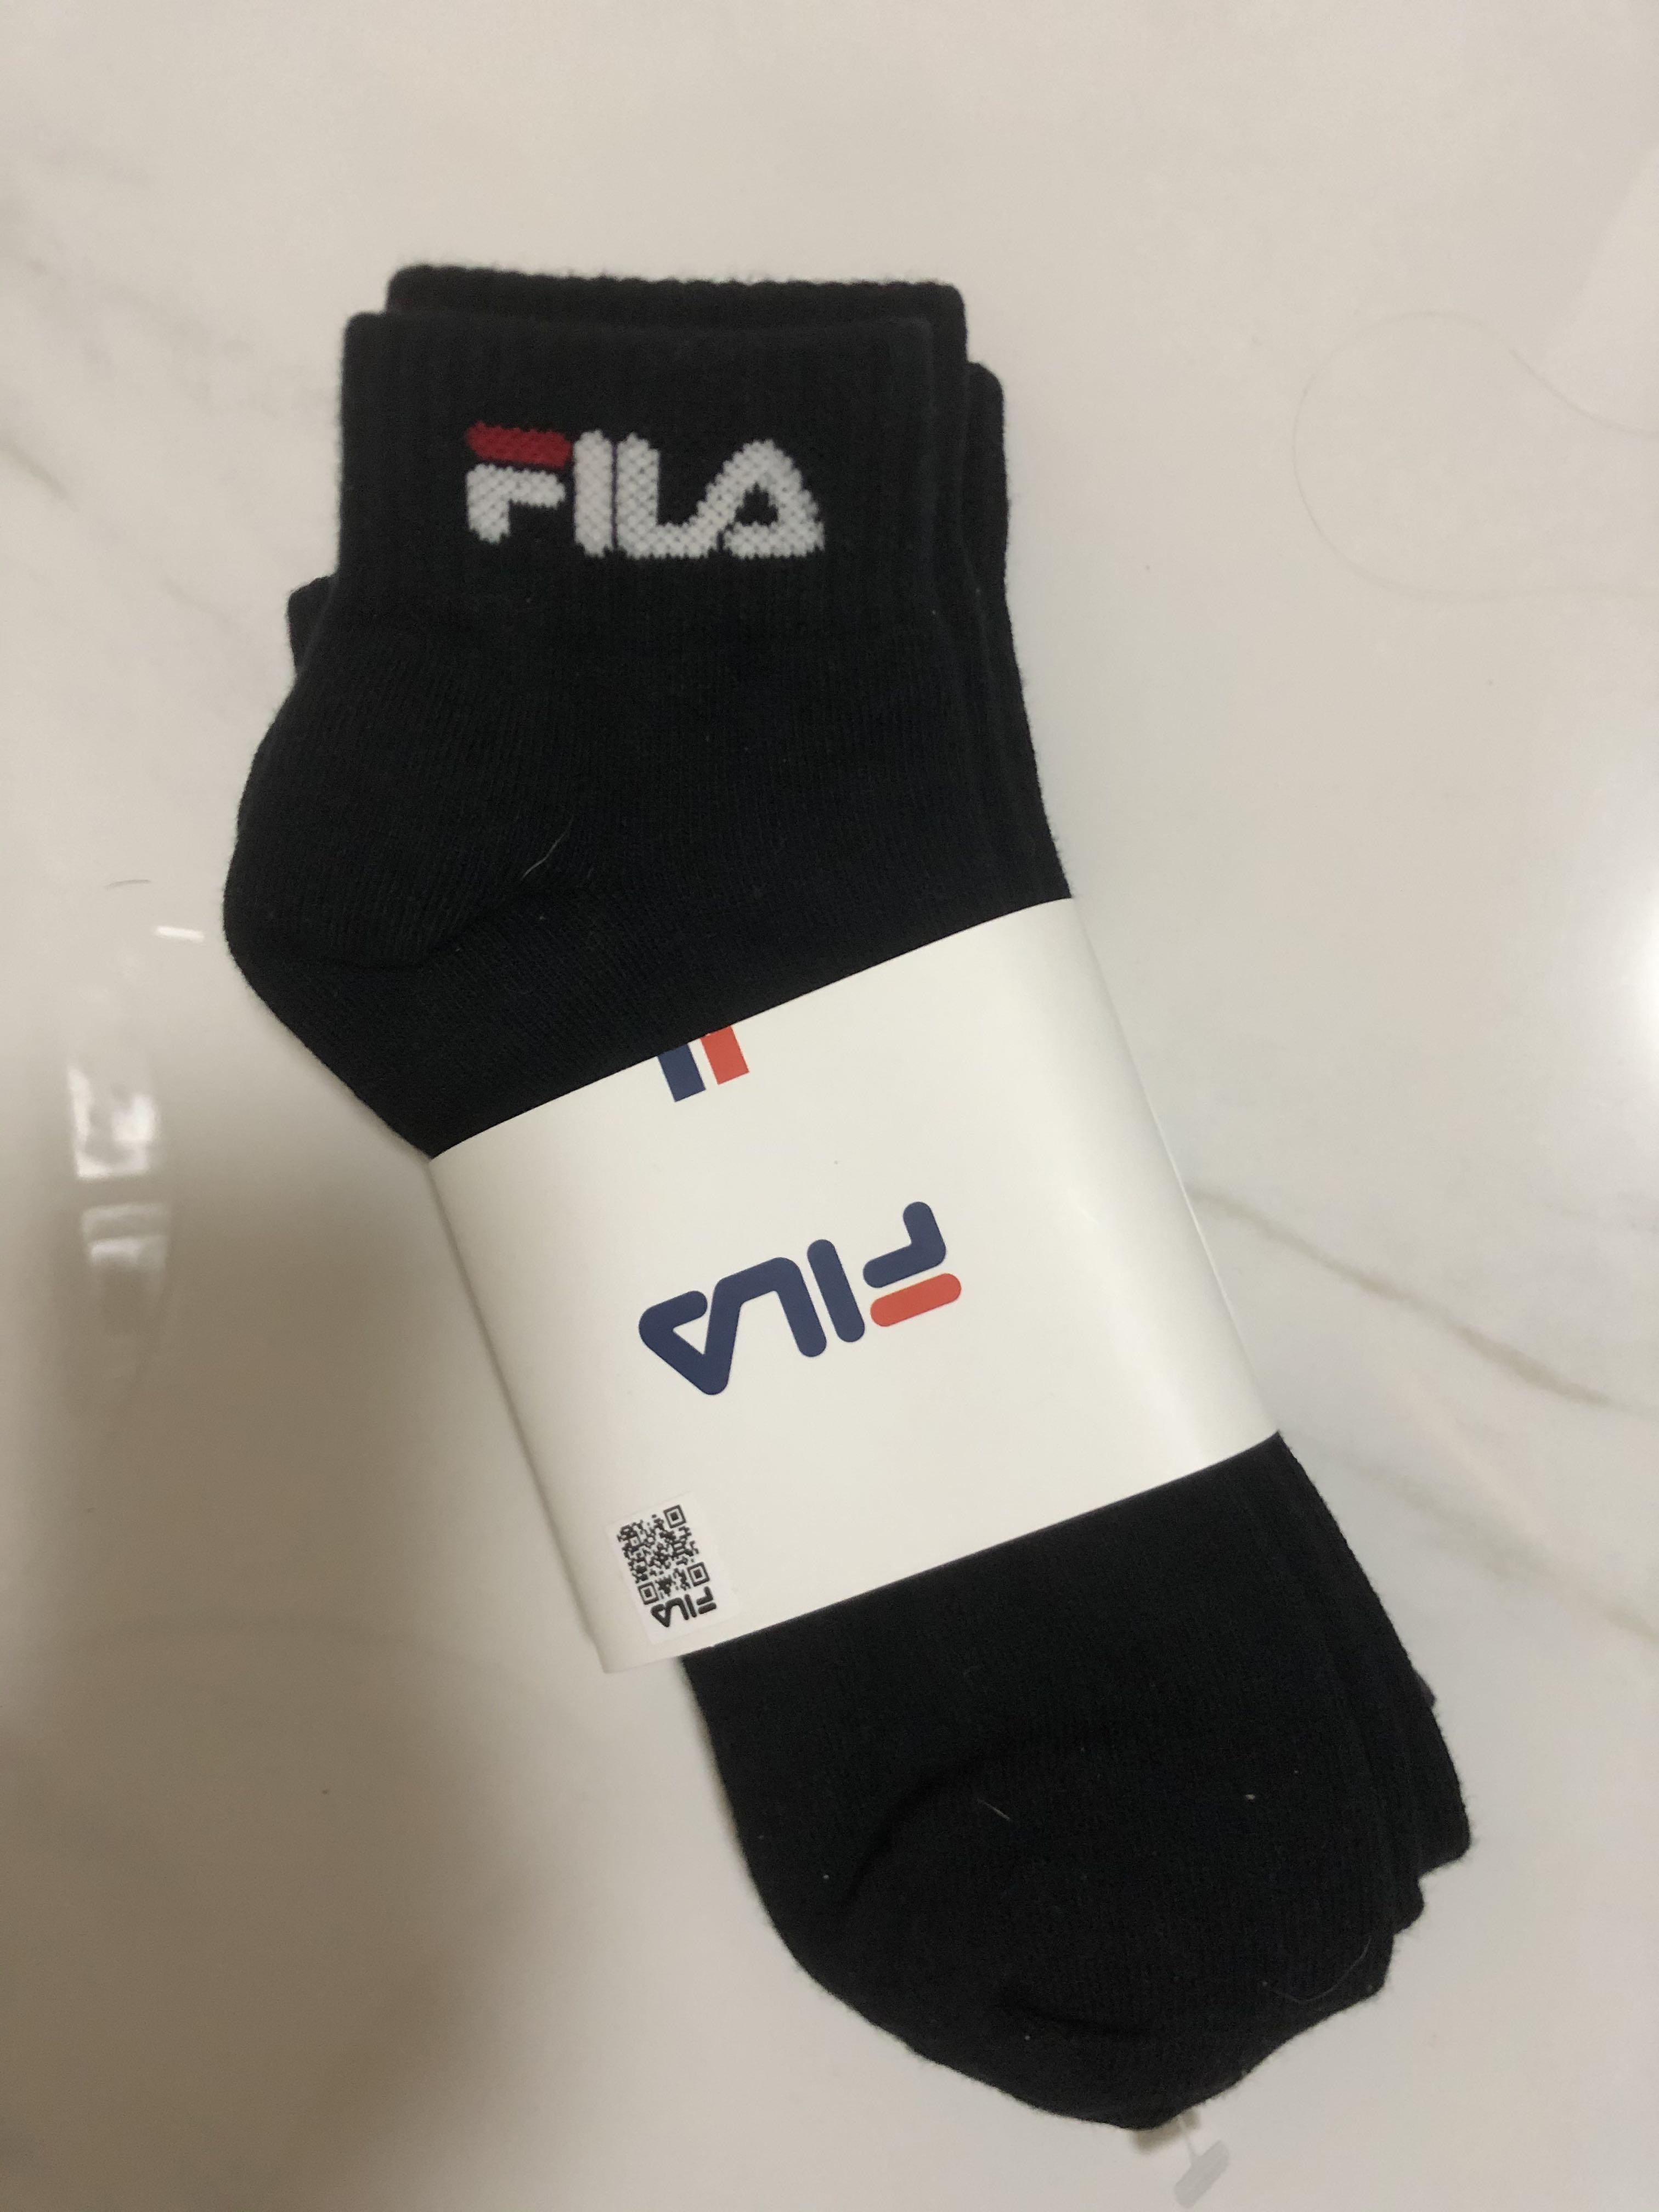 fila socks black